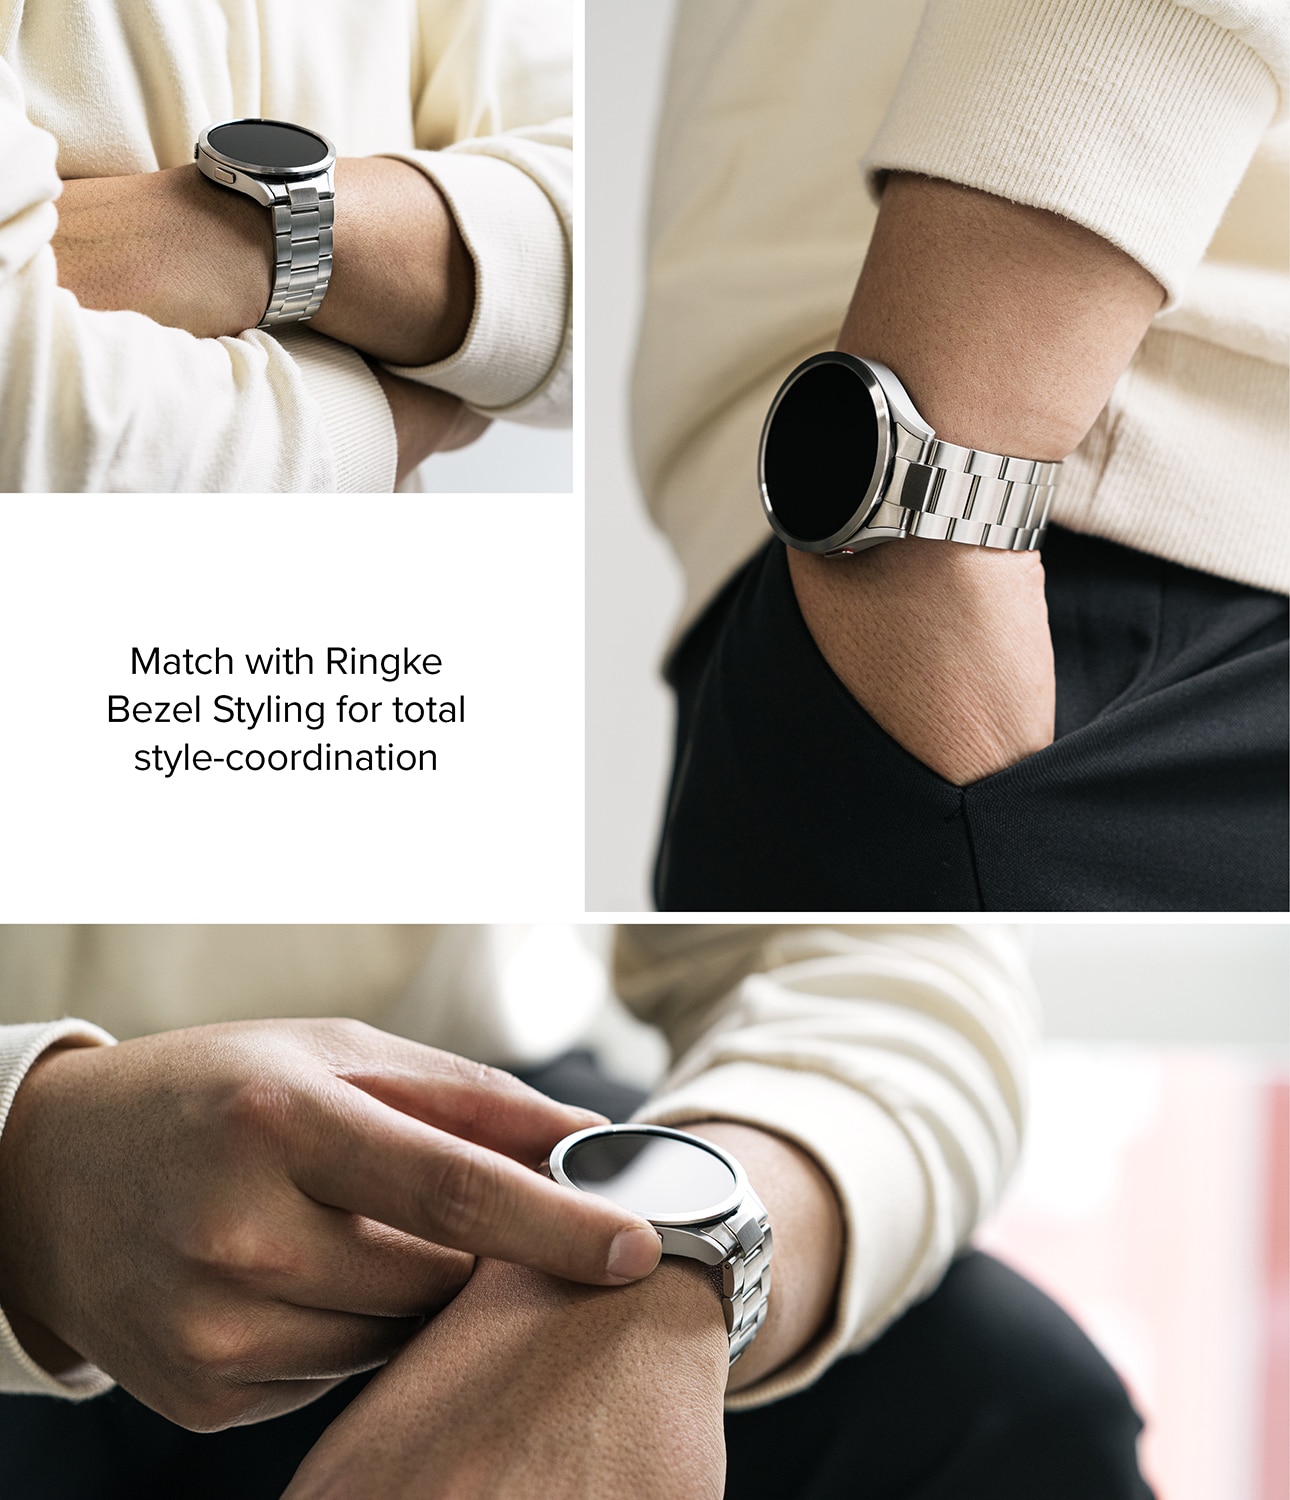 Compre Silicone Watch Band Para Xiaomi Redmi Watch 3 Active / Redmi Watch 3  Lite, Correa de Muñeca Con Estuche Protector - Negro en China